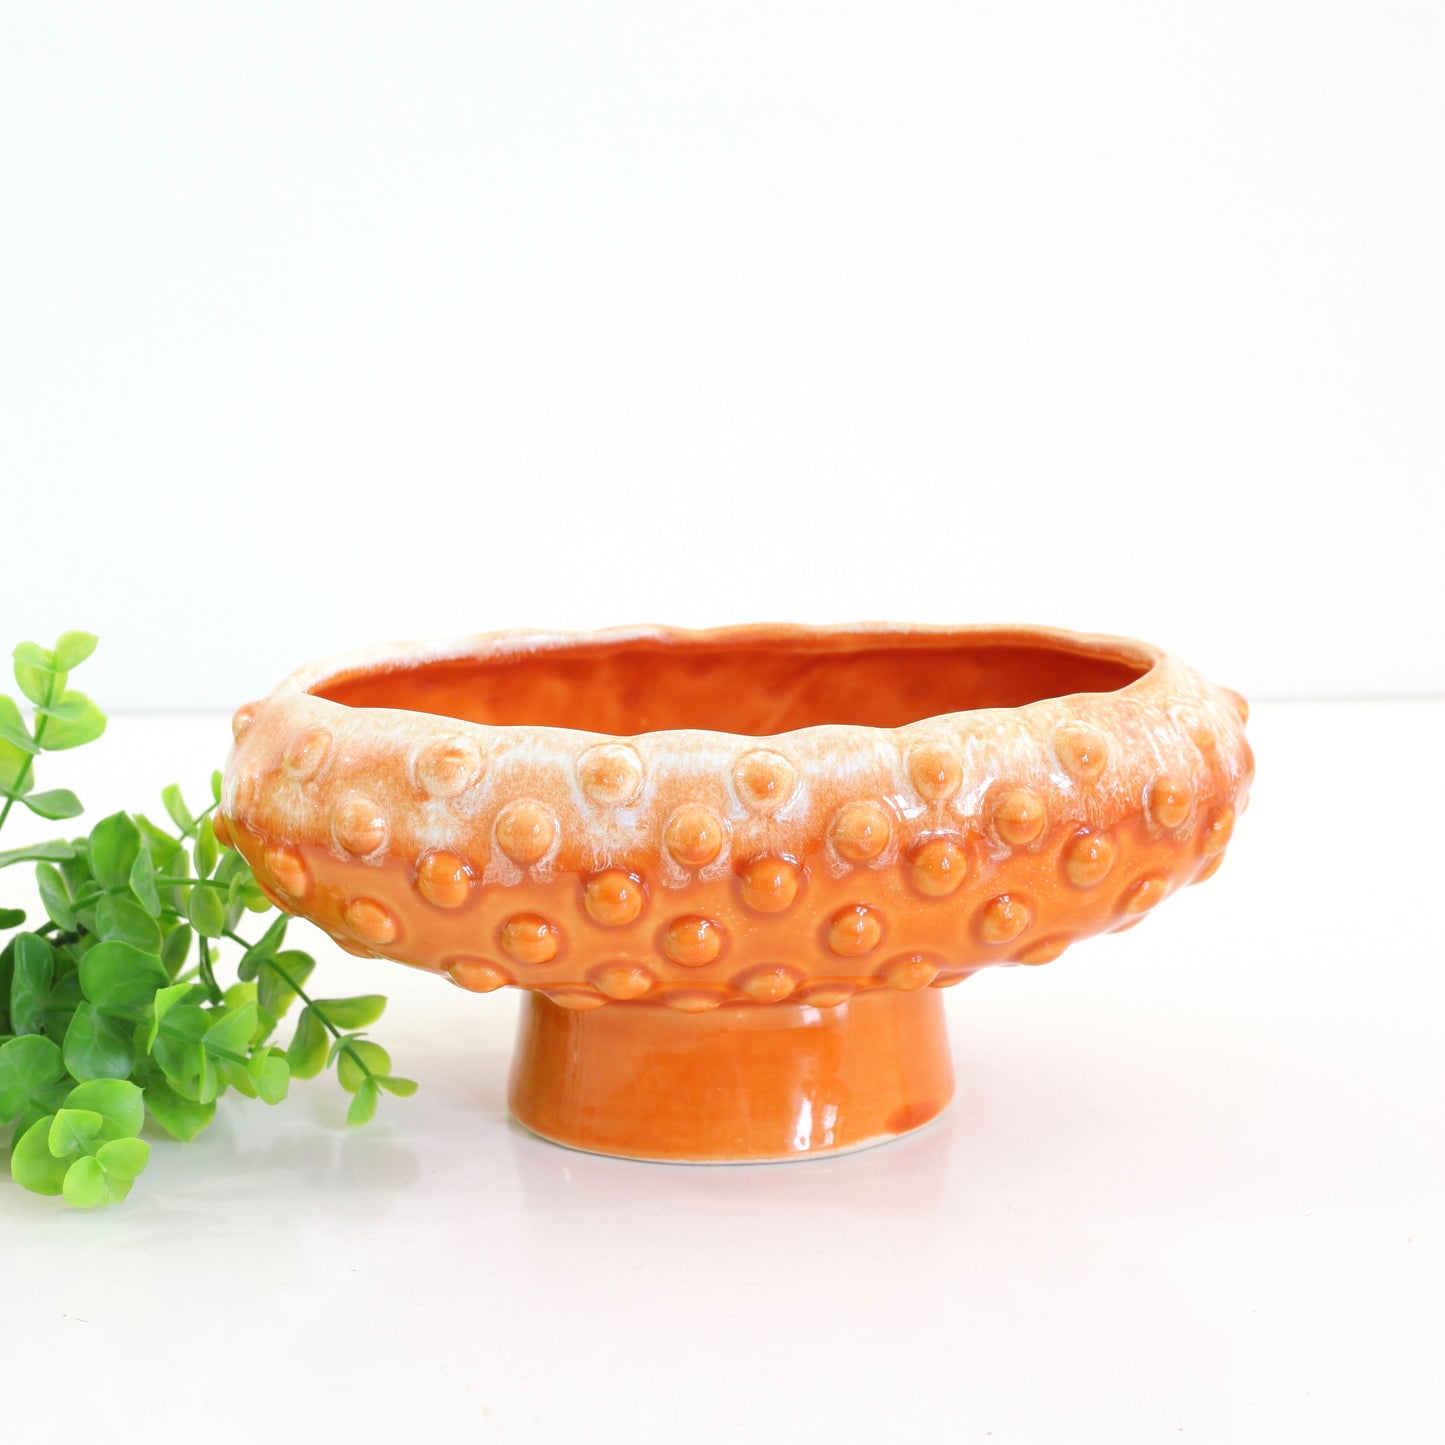 SOLD - Vintage Orange Ceramic Hobnail Pedestal Planter